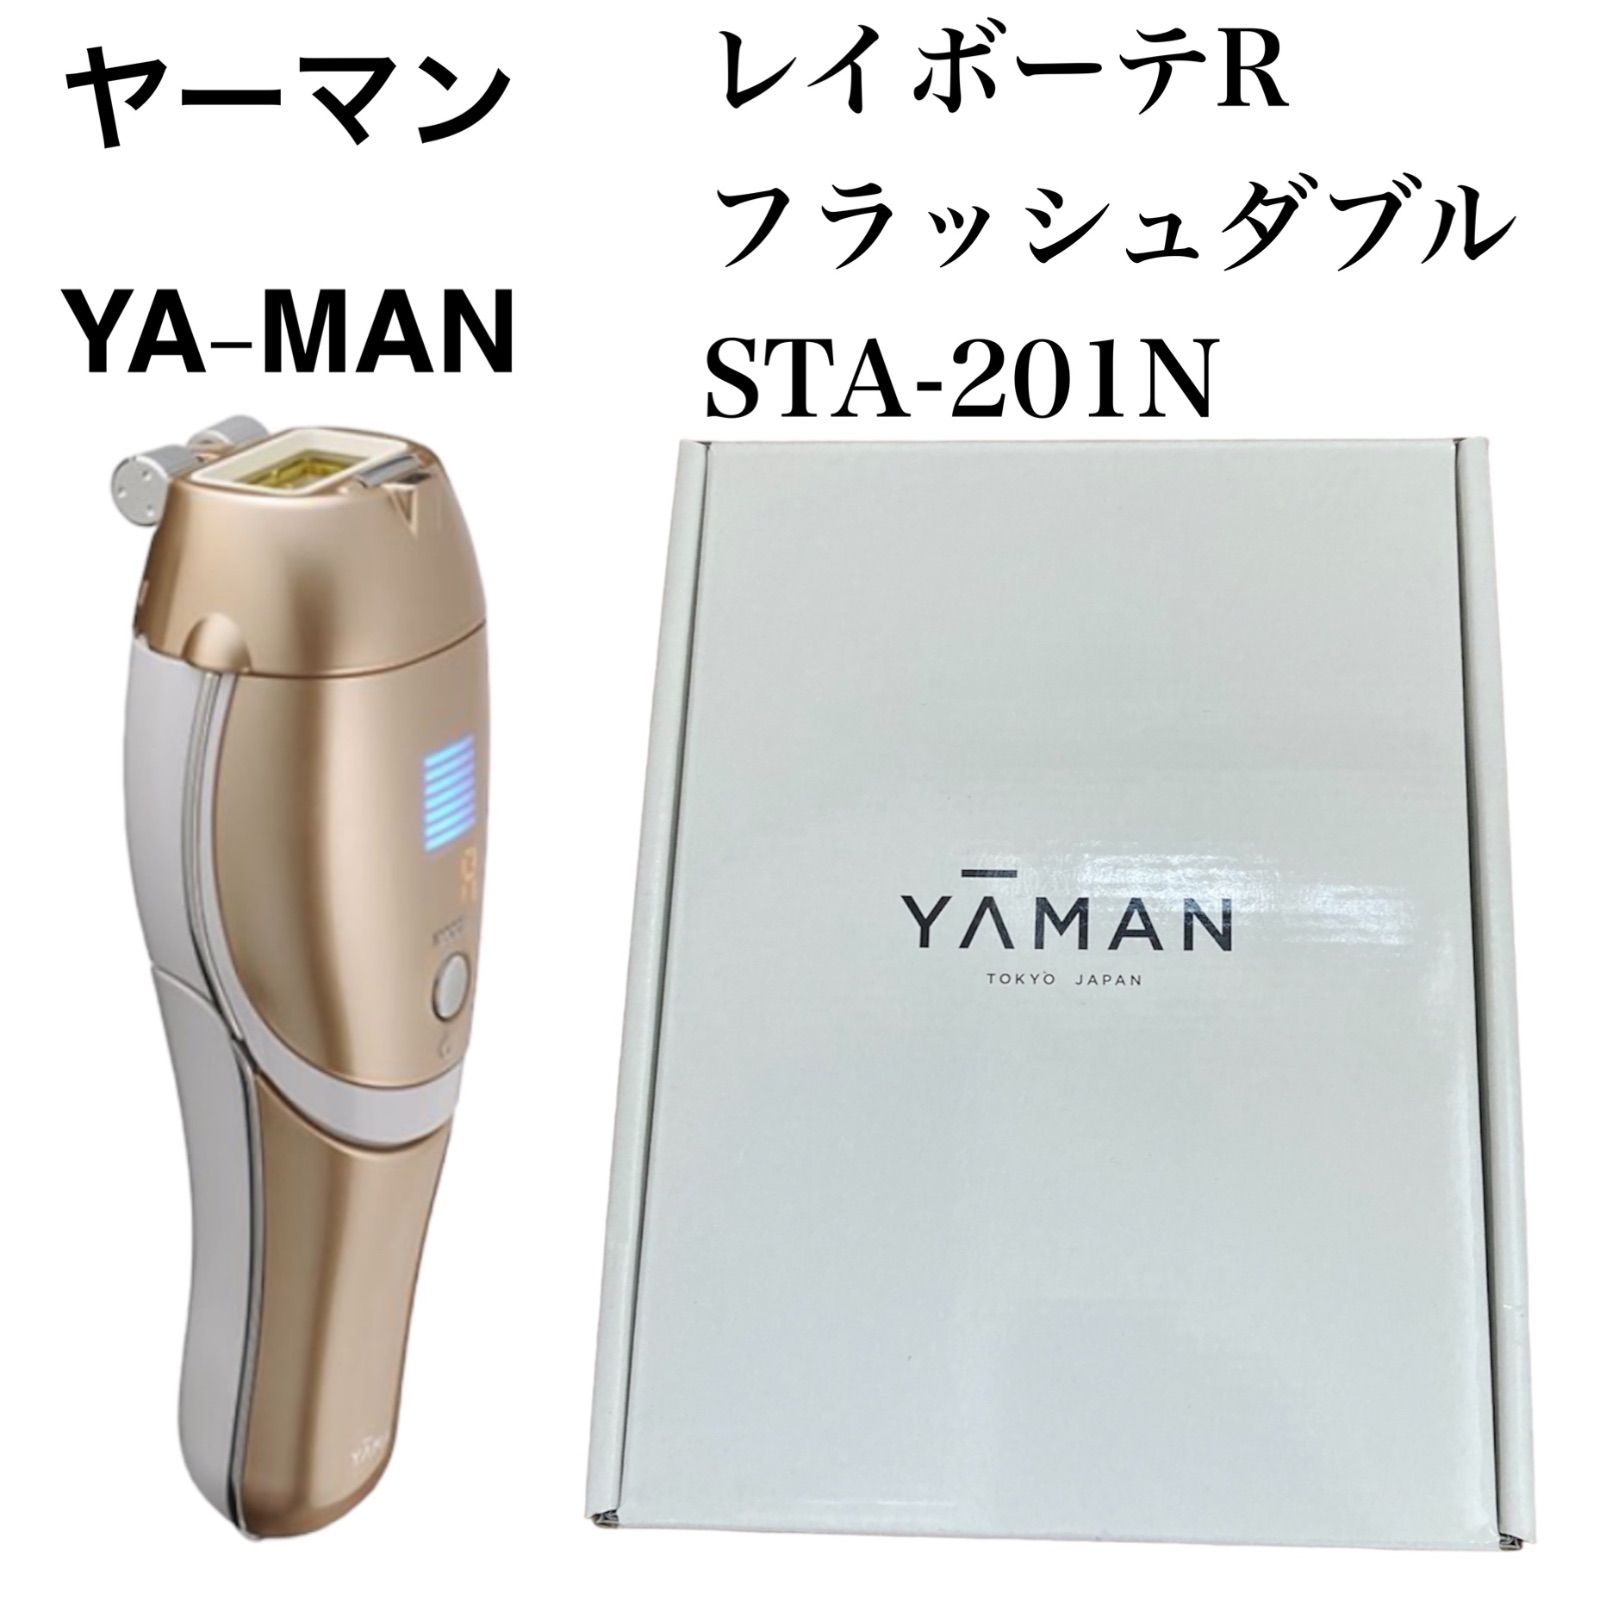 【新品】YA-MAN ヤーマン レイボーテ Rフラッシュ ダブルSTA-201N